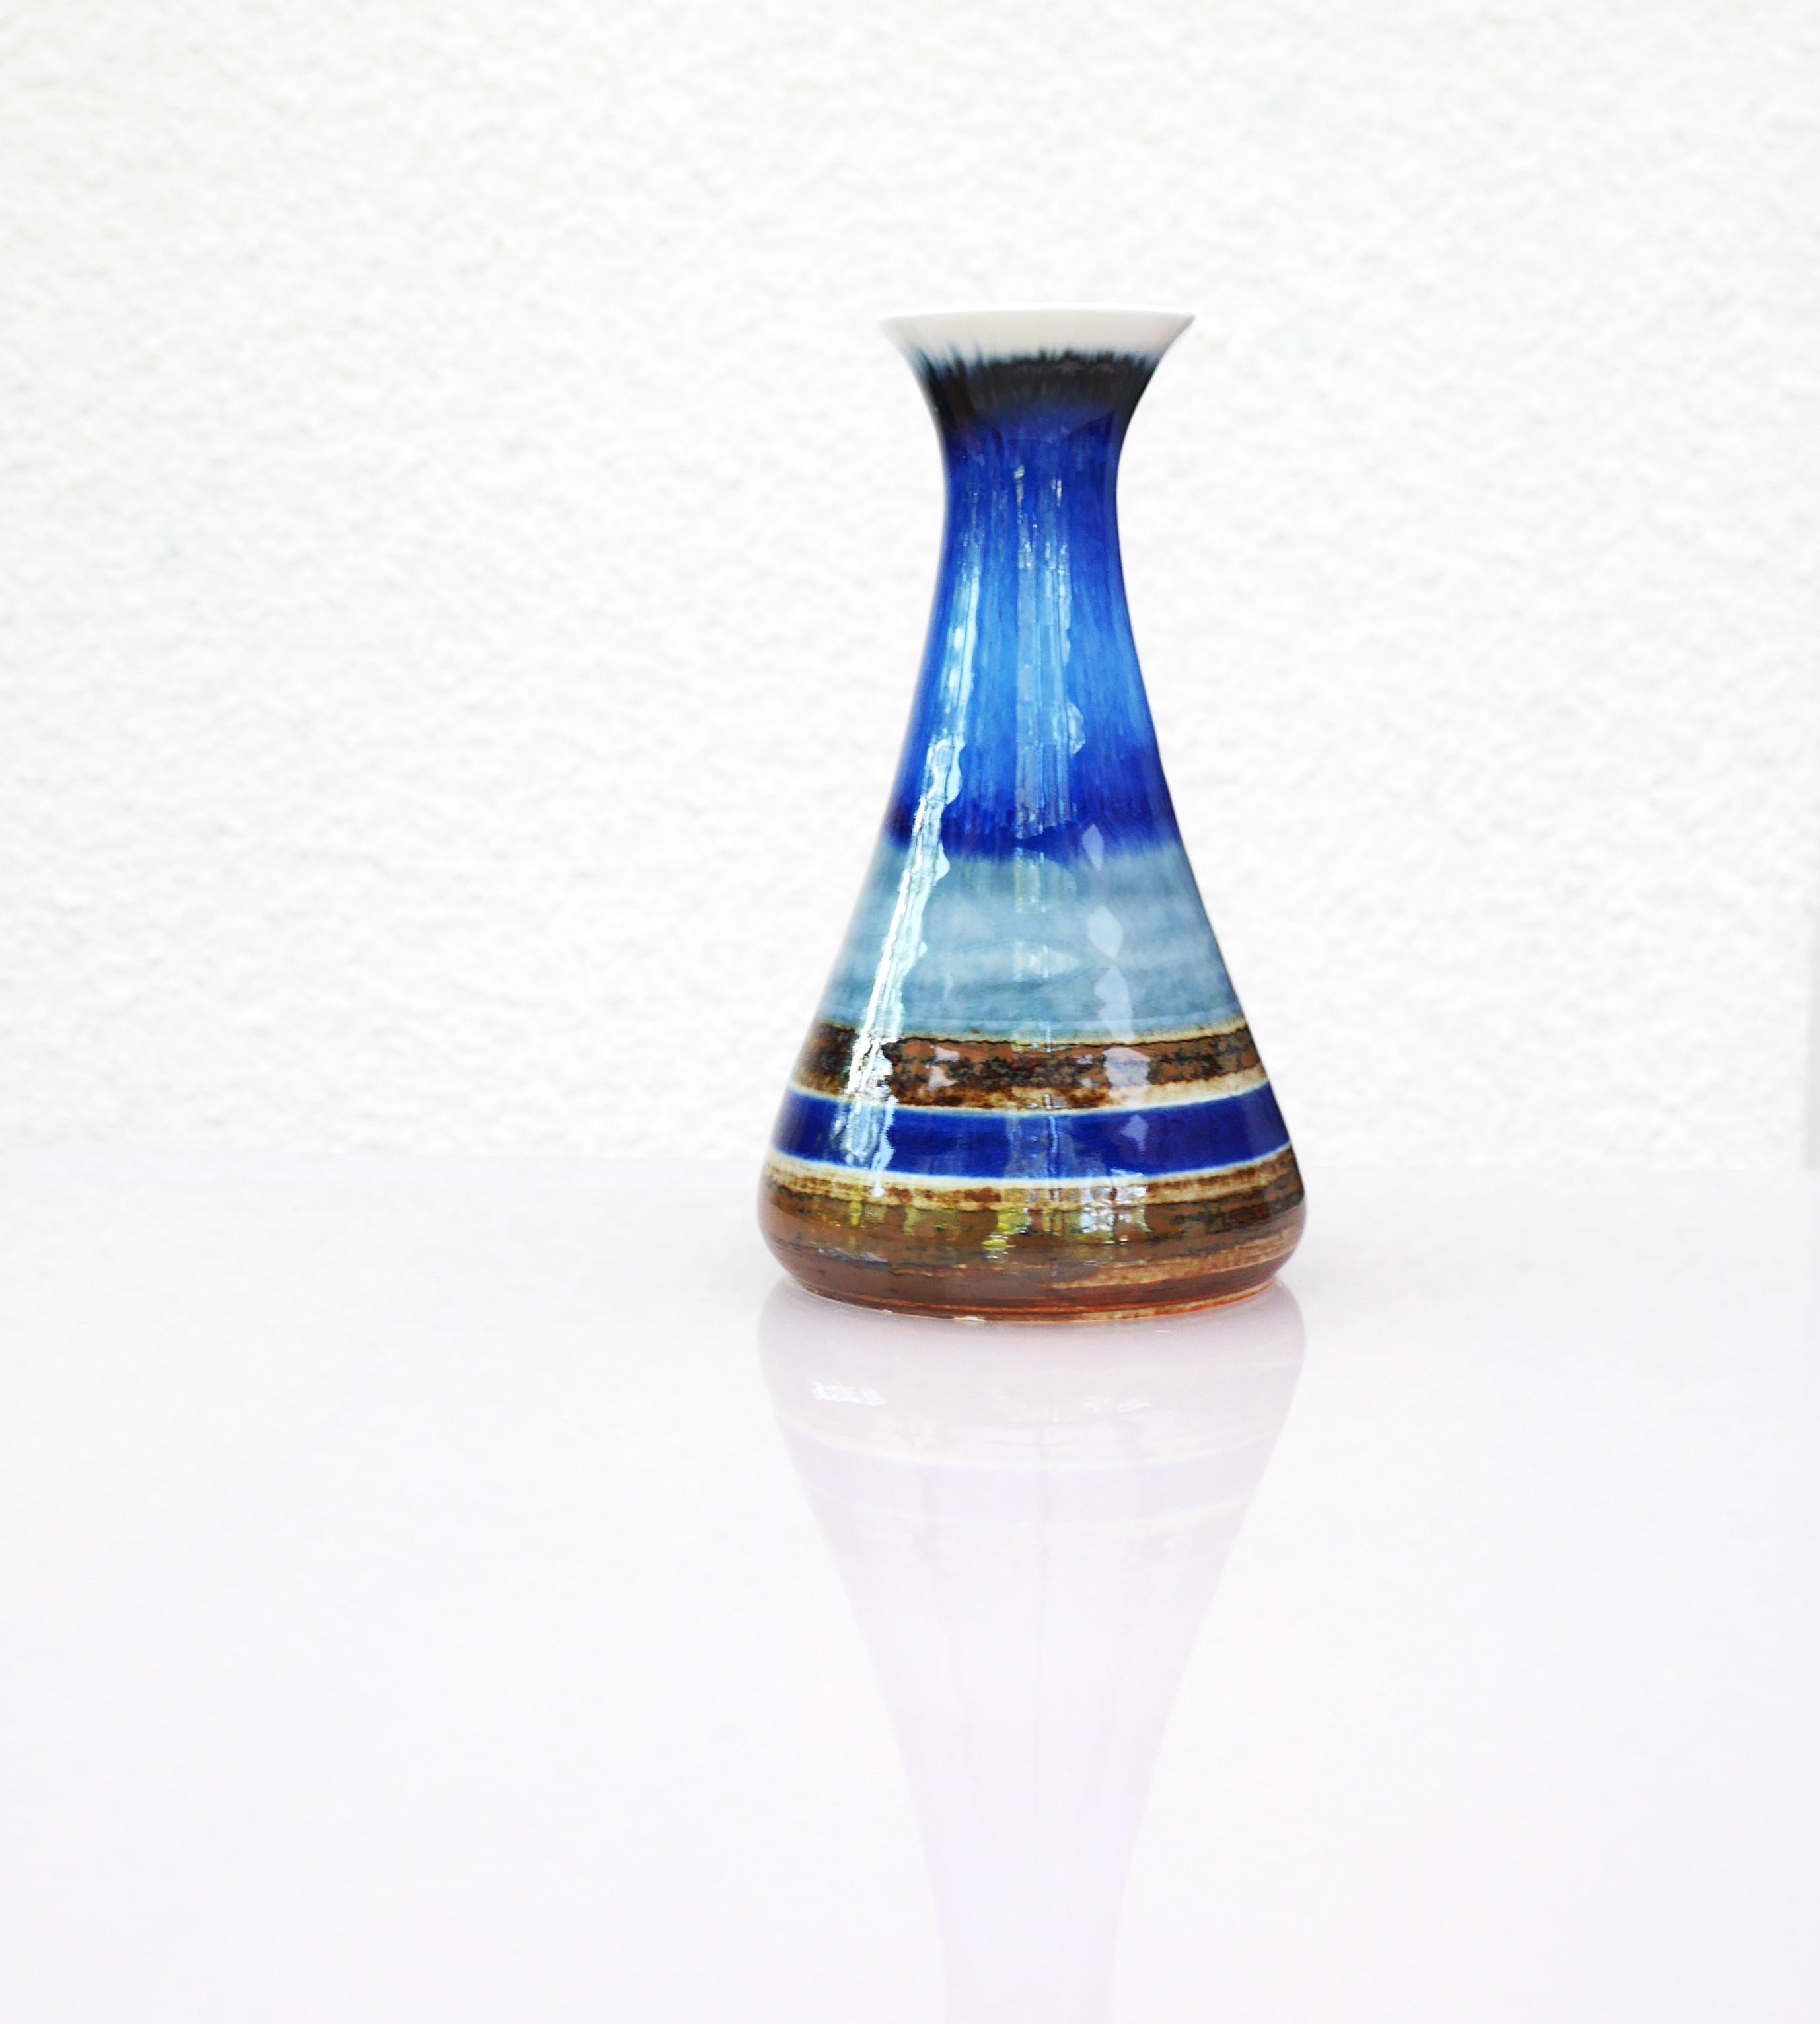 Ceramic Mid-century modern pottery vase by G. Millberg for Rörstrand, Sweden. For Sale